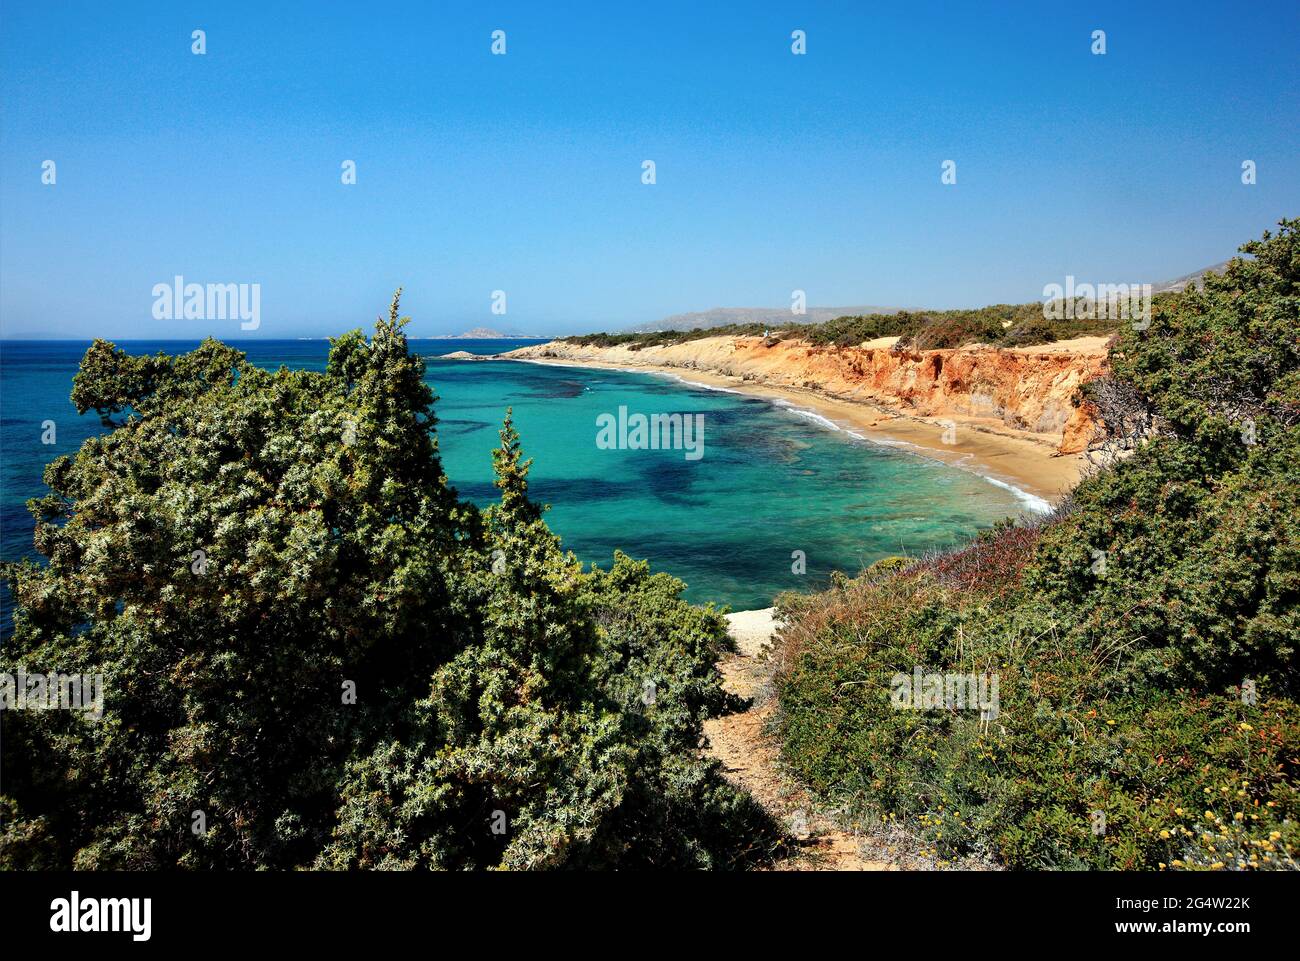 'Passage' à la plage d'Alyko, à Kedrodasos (littéralement 'forêt de Cèdre'), île de Naxos, Cyclades, mer Egée, Grèce. Banque D'Images